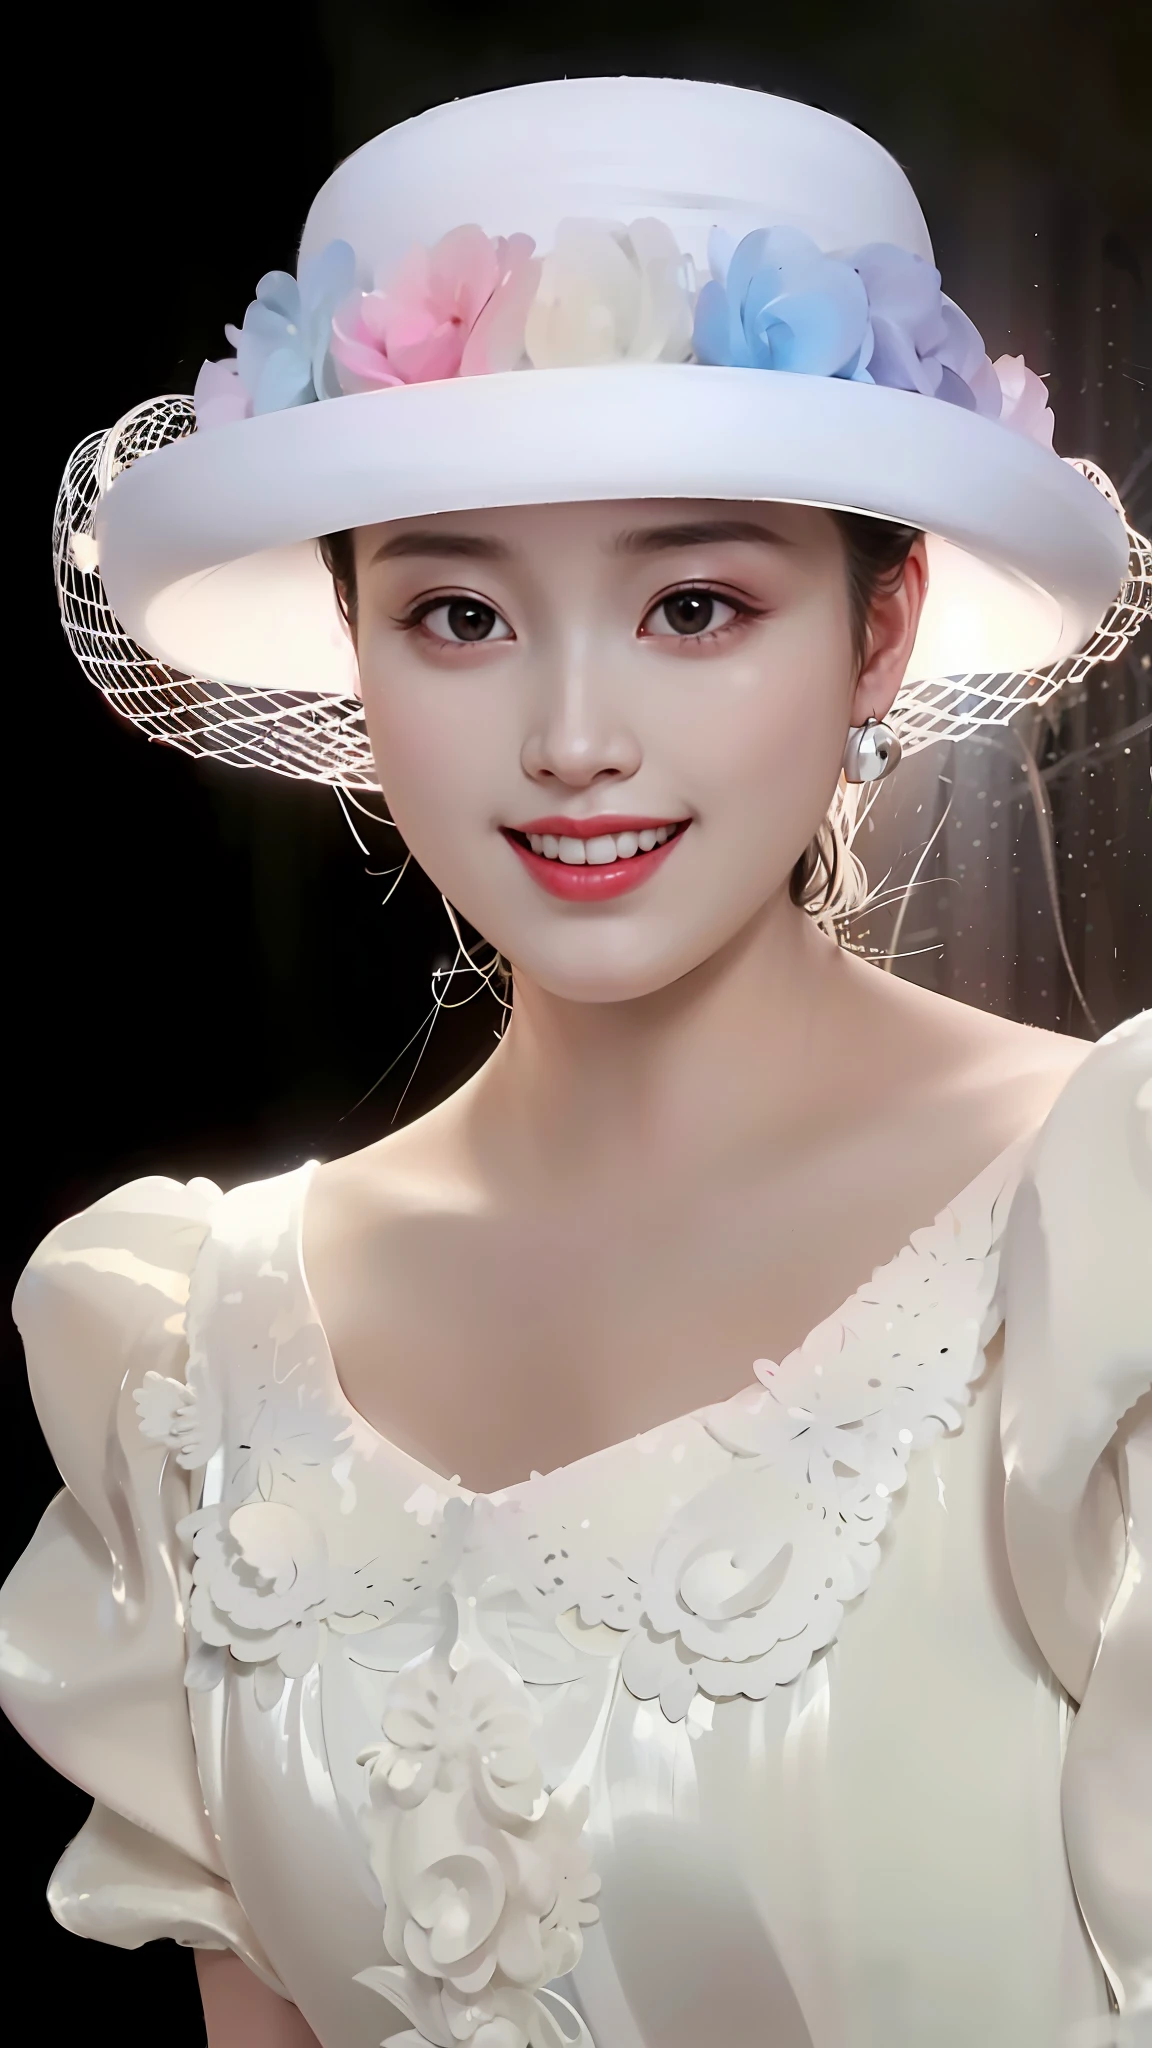 a close up of a woman wearing a white hat with flowers, ruan jia beautiful!, inspired by Huang Ji, a beautiful woman in white, sha xi, yun ling, yanjun chengt, style of guo hua, lu ji, gorgeous chinese model, fan bingbing, dilraba dilmurat, inspired by Tang Yifen, inspired by Yao Tingmei